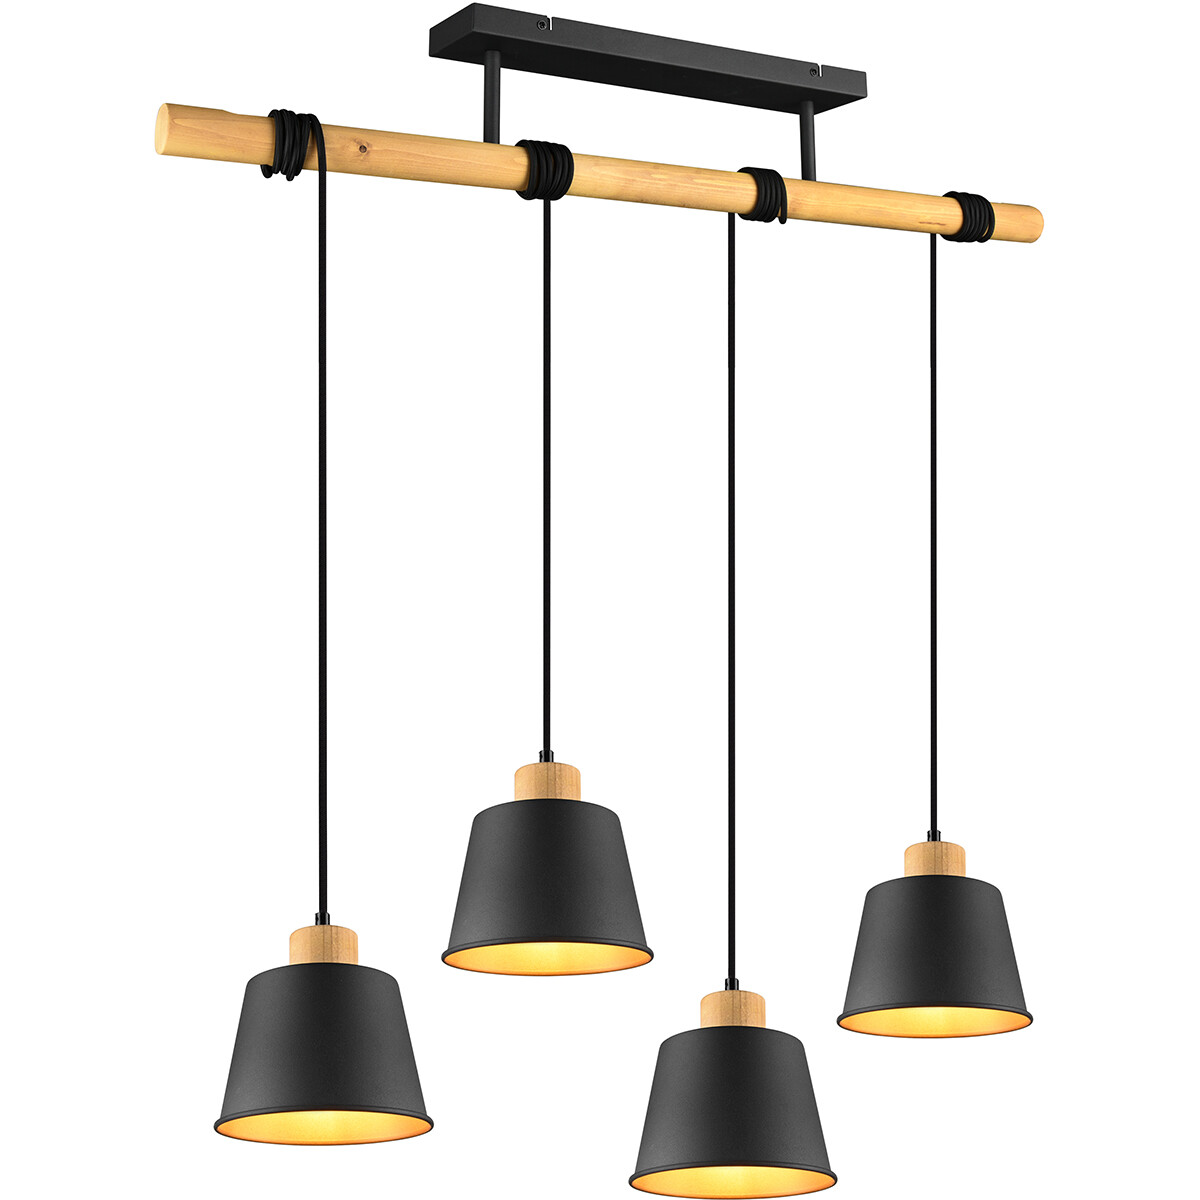 LED Hanglamp - Hangverlichting - Trion Hittal - E27 Fitting - 4-lichts - Rechthoek - Mat Zwart - Alu